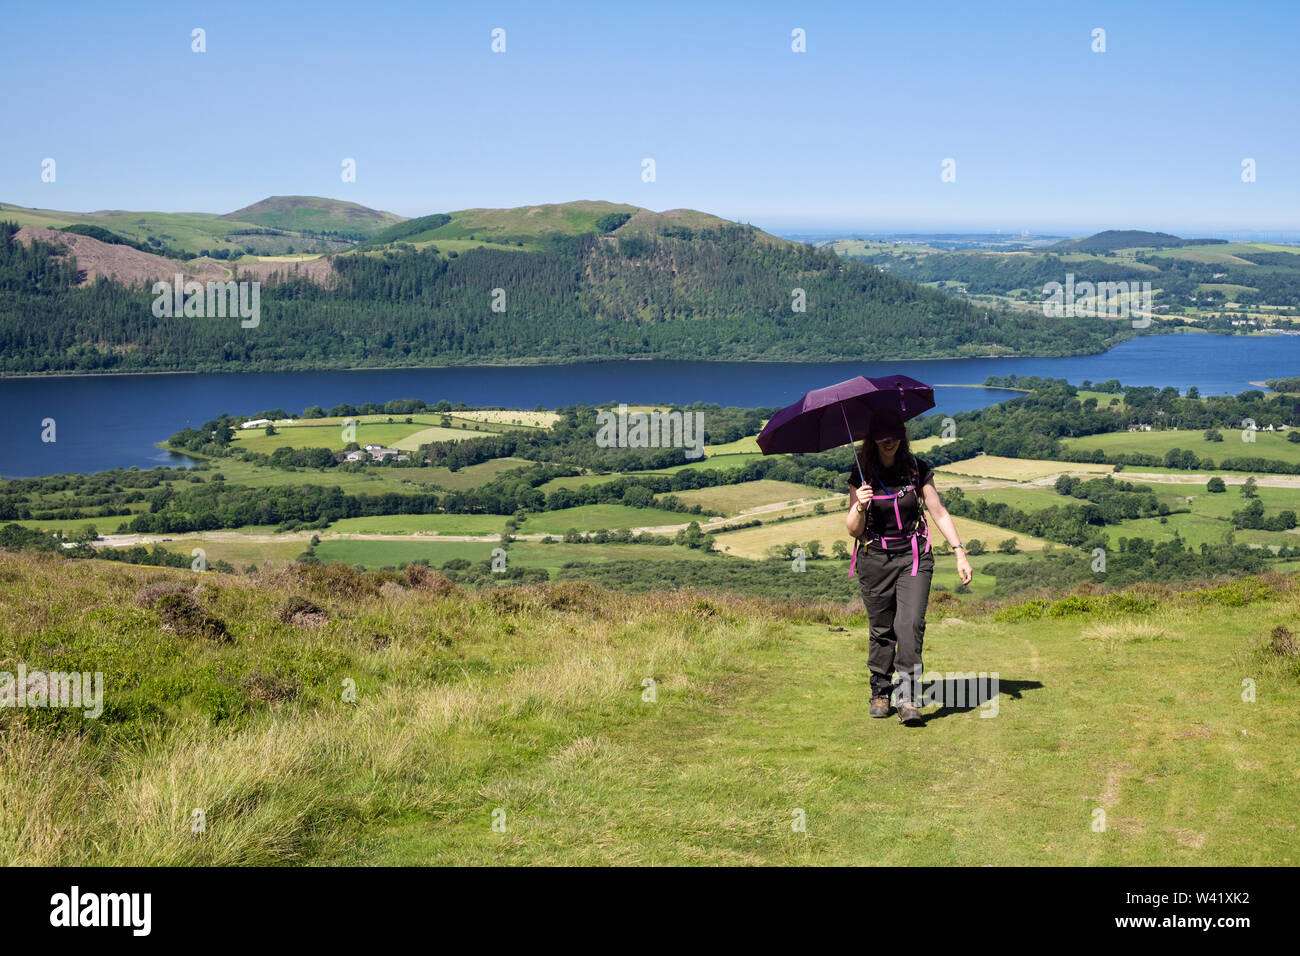 Walker en utilisant un parapluie femme comme un parasol sur chemin de Braithwaite to Skiddaw dans Lake District National Park en été. Keswick Cumbria England UK Banque D'Images